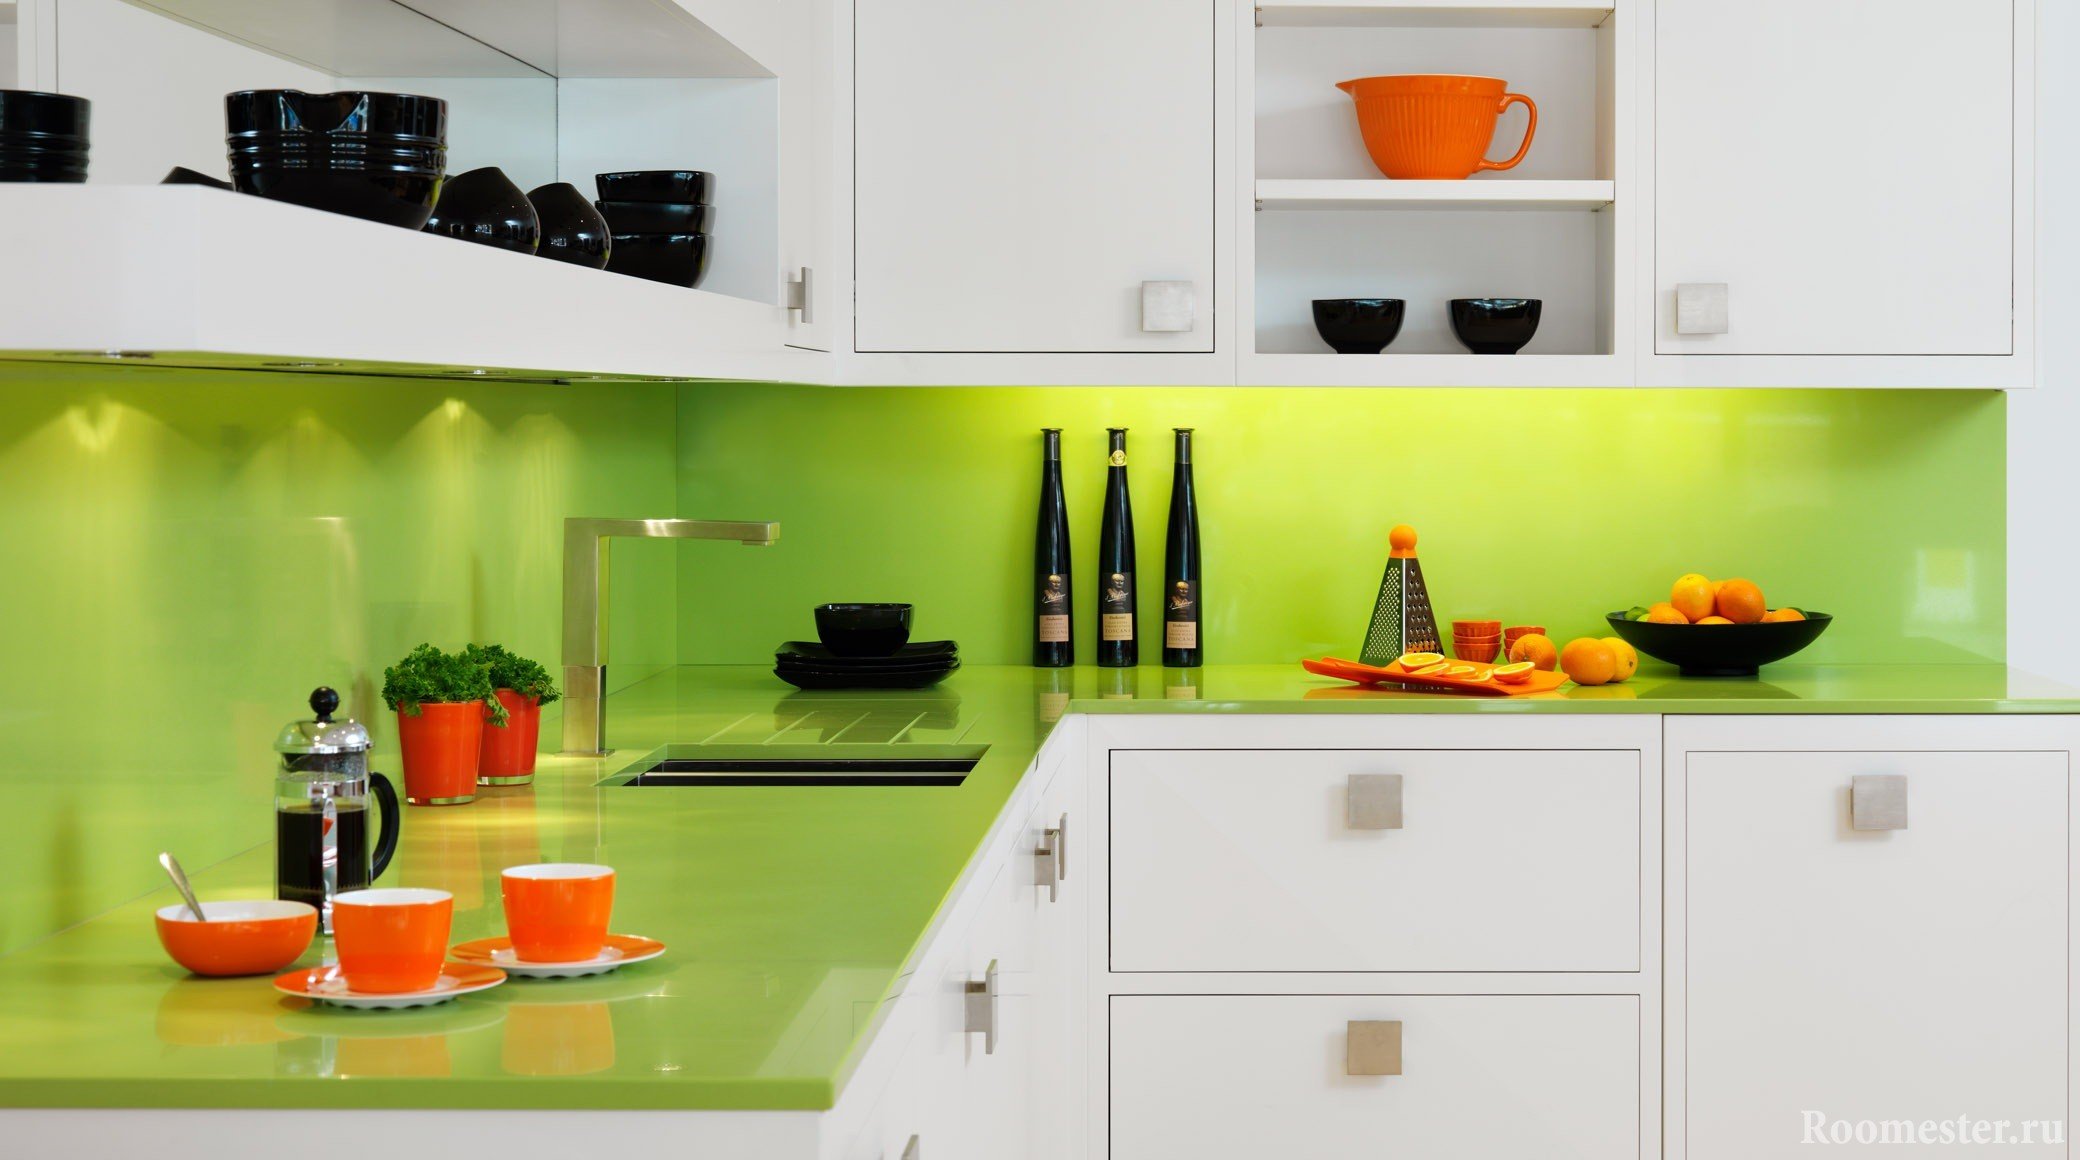 Оранжевая и черная посуда в бело-зеленой кухне